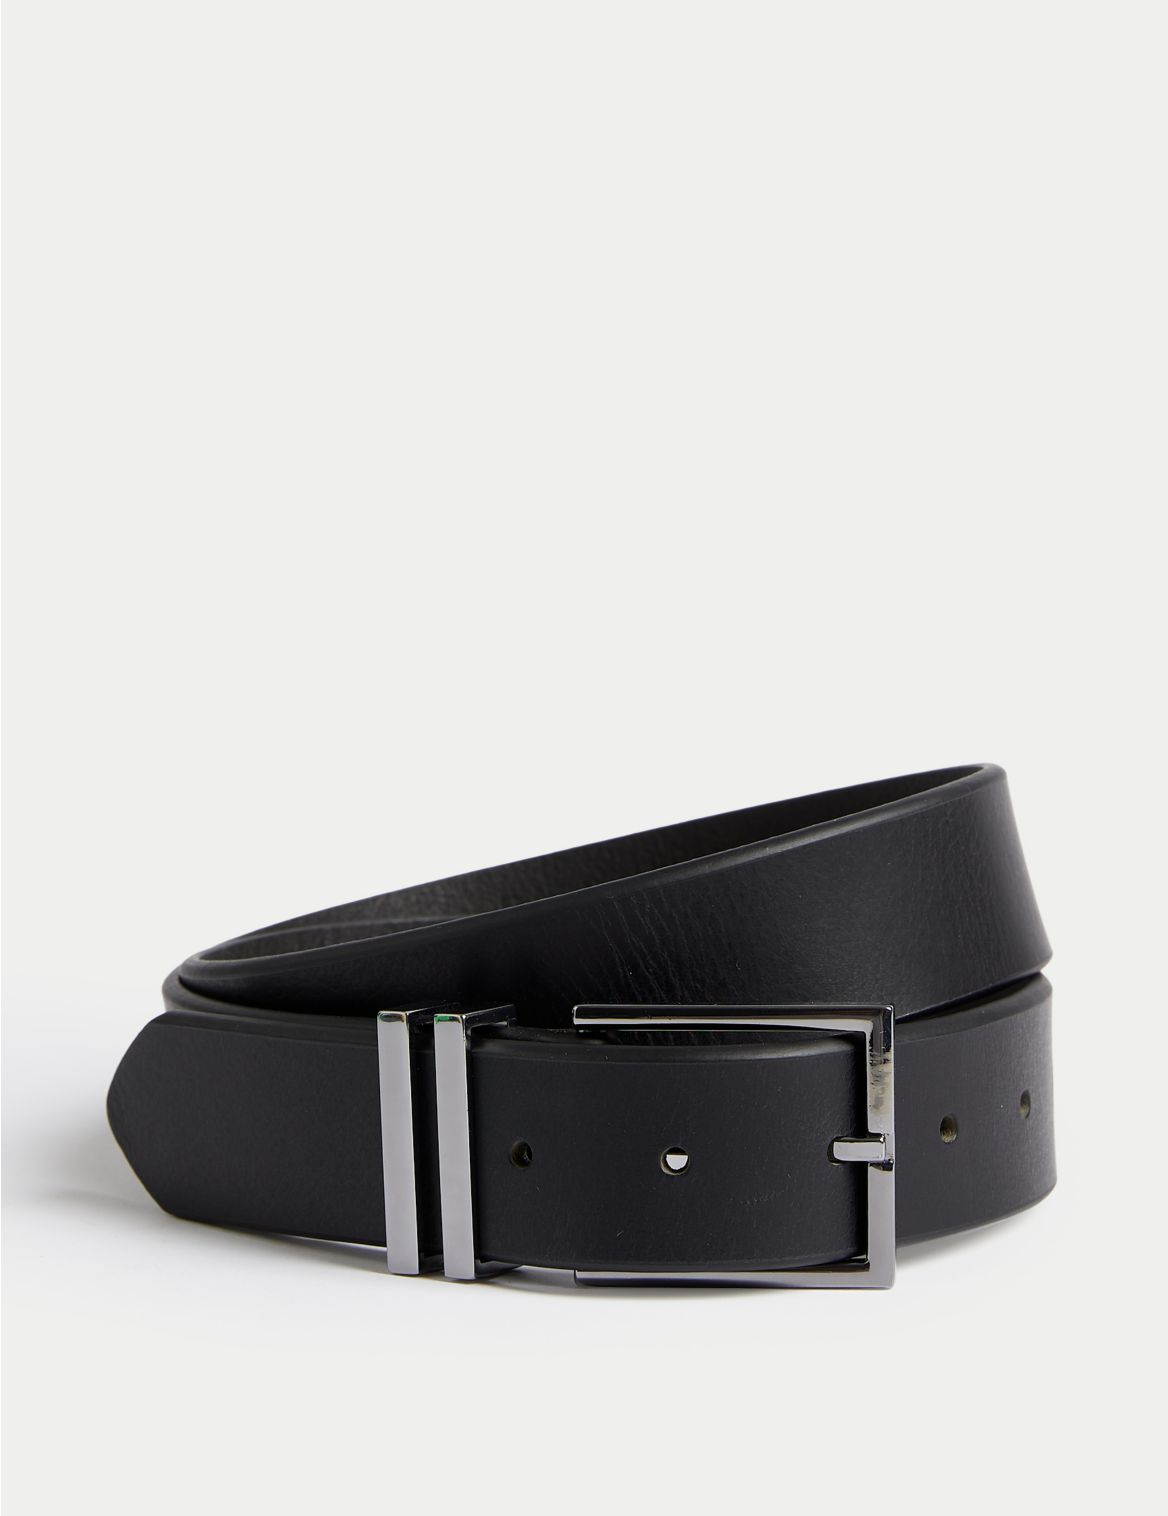 Black Leather Belt black